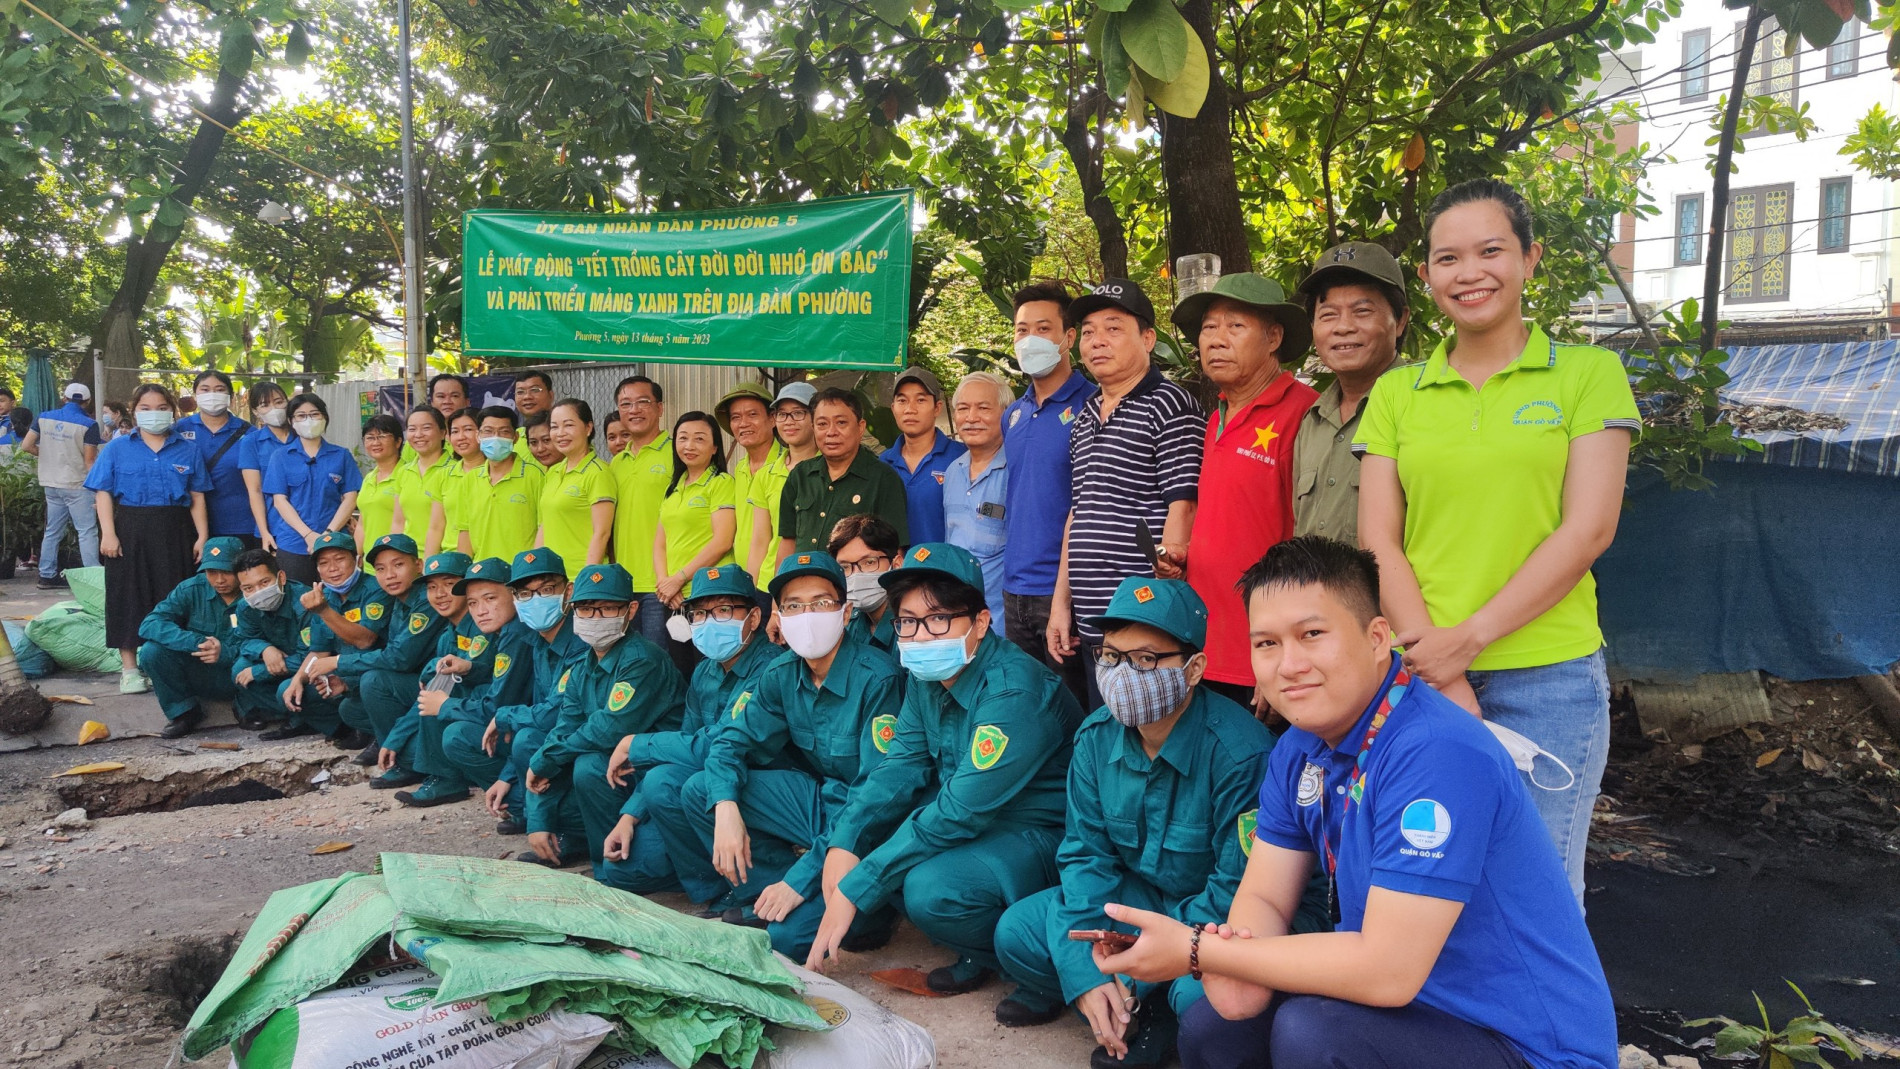 Quận Gò Vấp: Người dân hào hứng 'đổi rác lấy cây xanh'